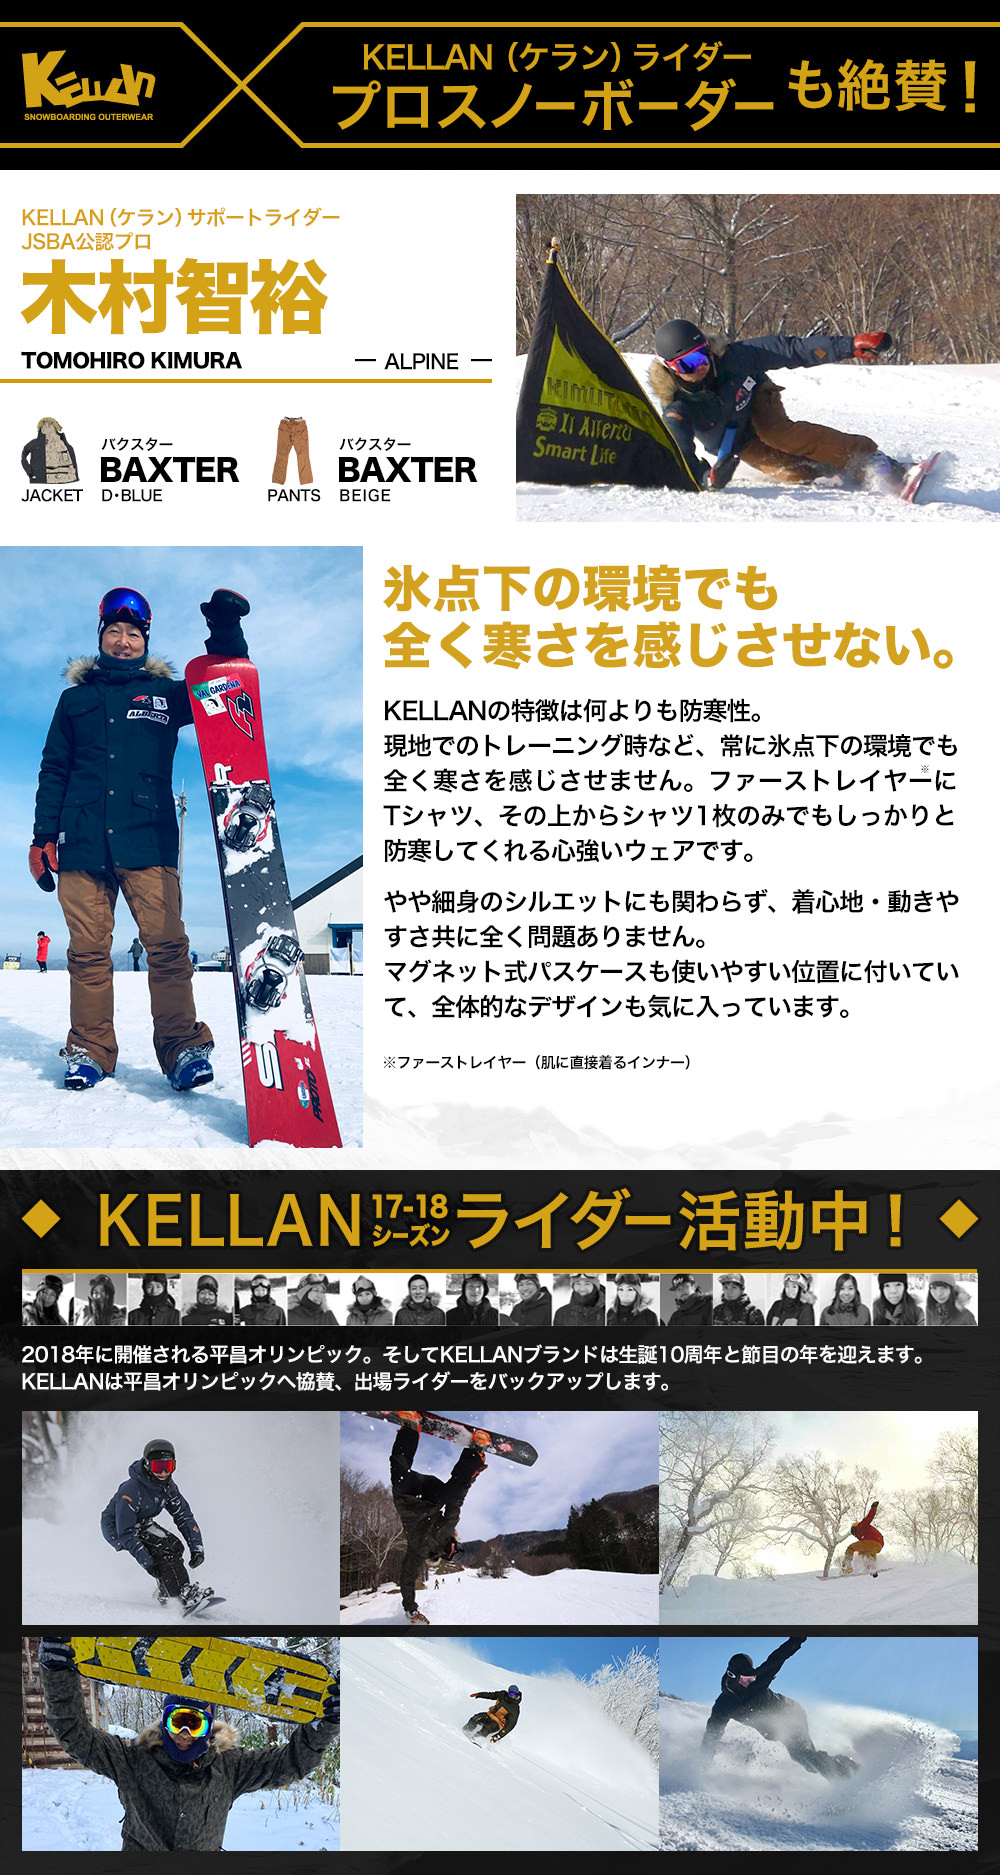 スノボ ウェア メンズ レディース ケラン バクスタージャケット スノーボードウェア スキーウェア 男女兼用 大きいサイズ 耐水圧 KELLAN BAXTER JKT 10101 送料無料 ユニセックス 小さいサイズ